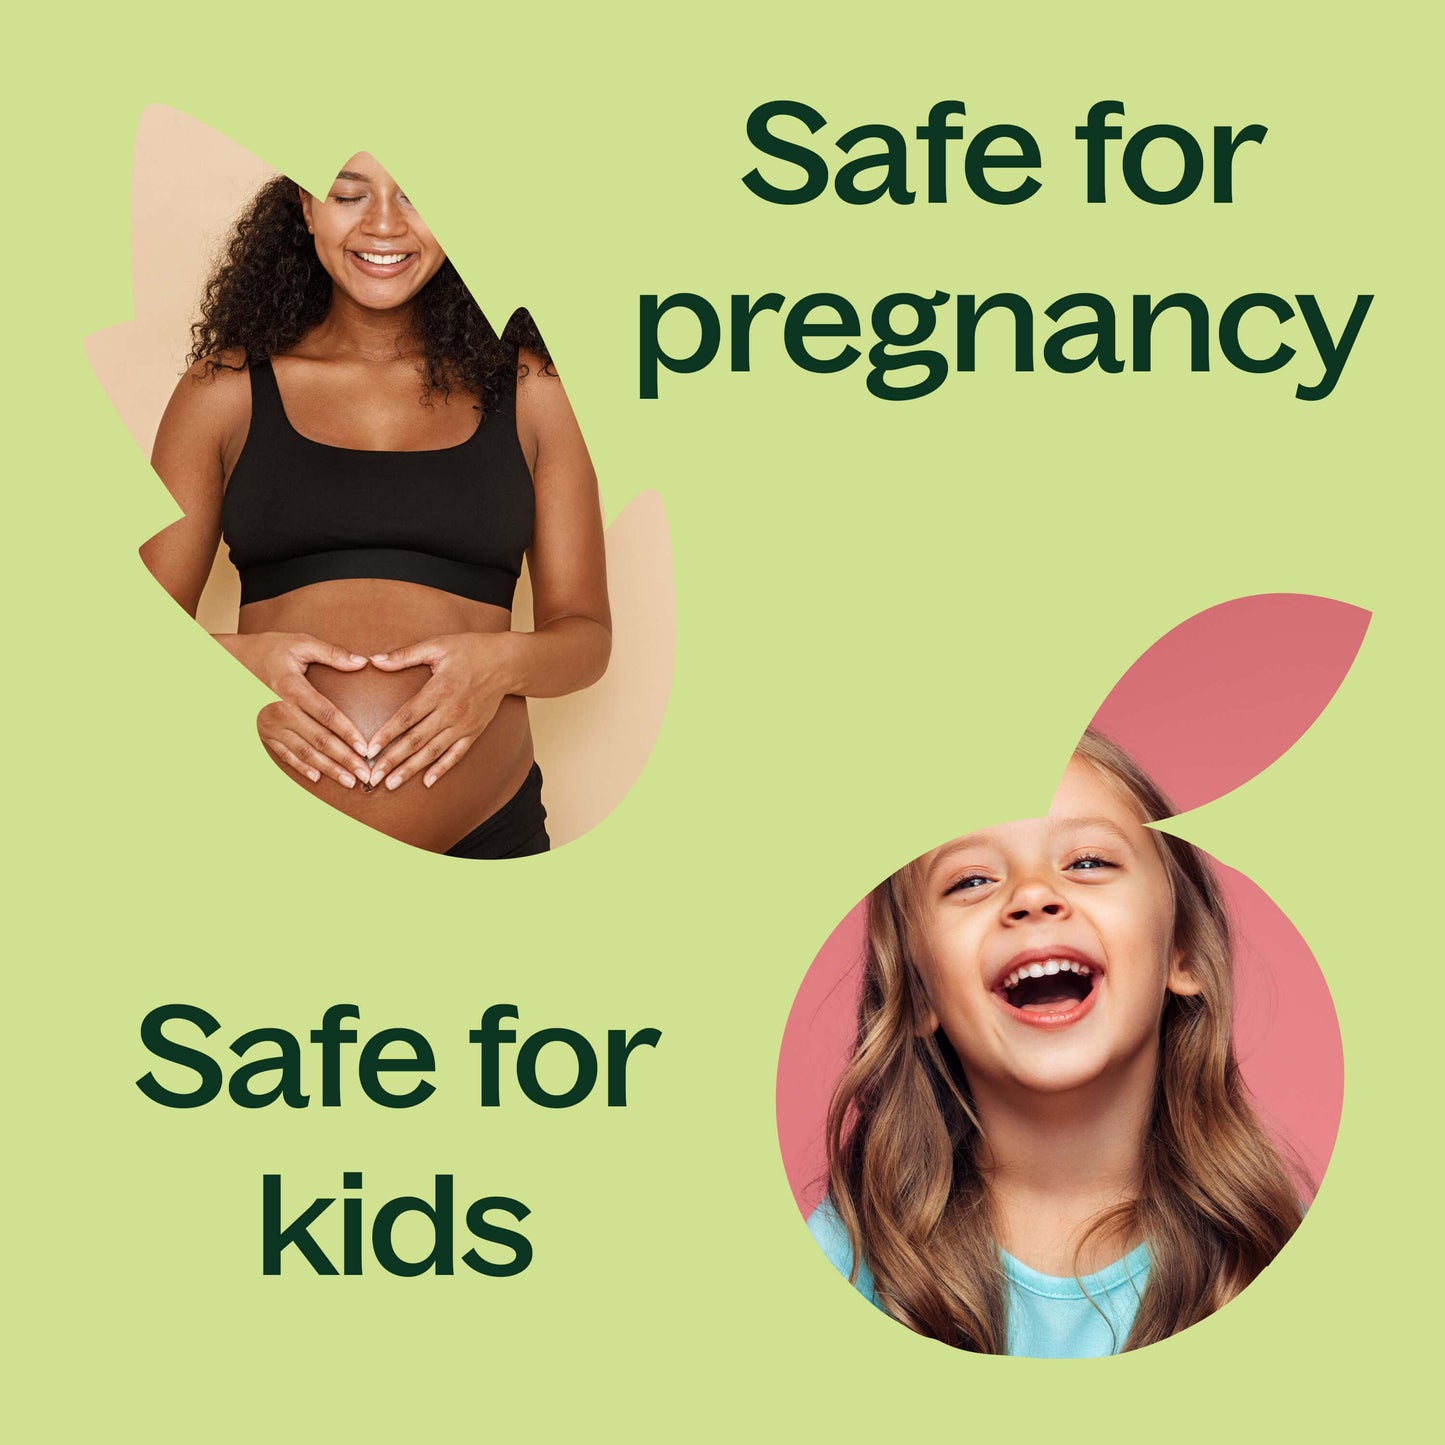 safe for pregnancy and safe for kids